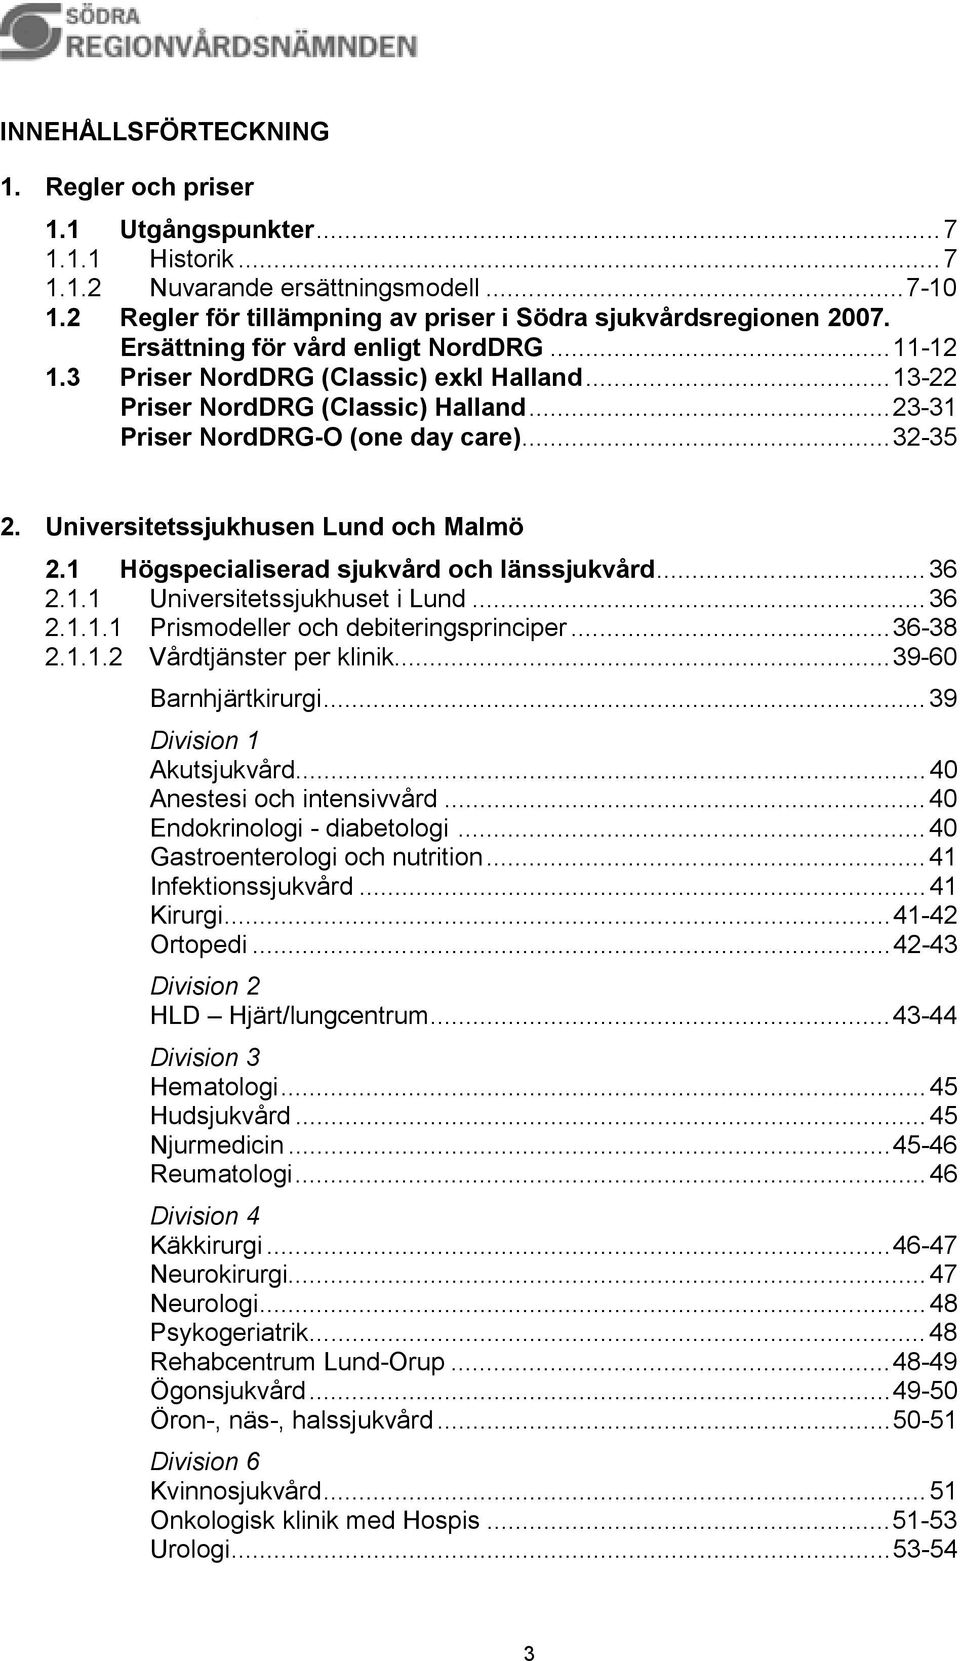 Universitetssjukhusen Lund och Malmö 2.1 Högspecialiserad sjukvård och länssjukvård...36 2.1.1 Universitetssjukhuset i Lund...36 2.1.1.1 Prismodeller och debiteringsprinciper...36-38 2.1.1.2 Vårdtjänster per klinik.